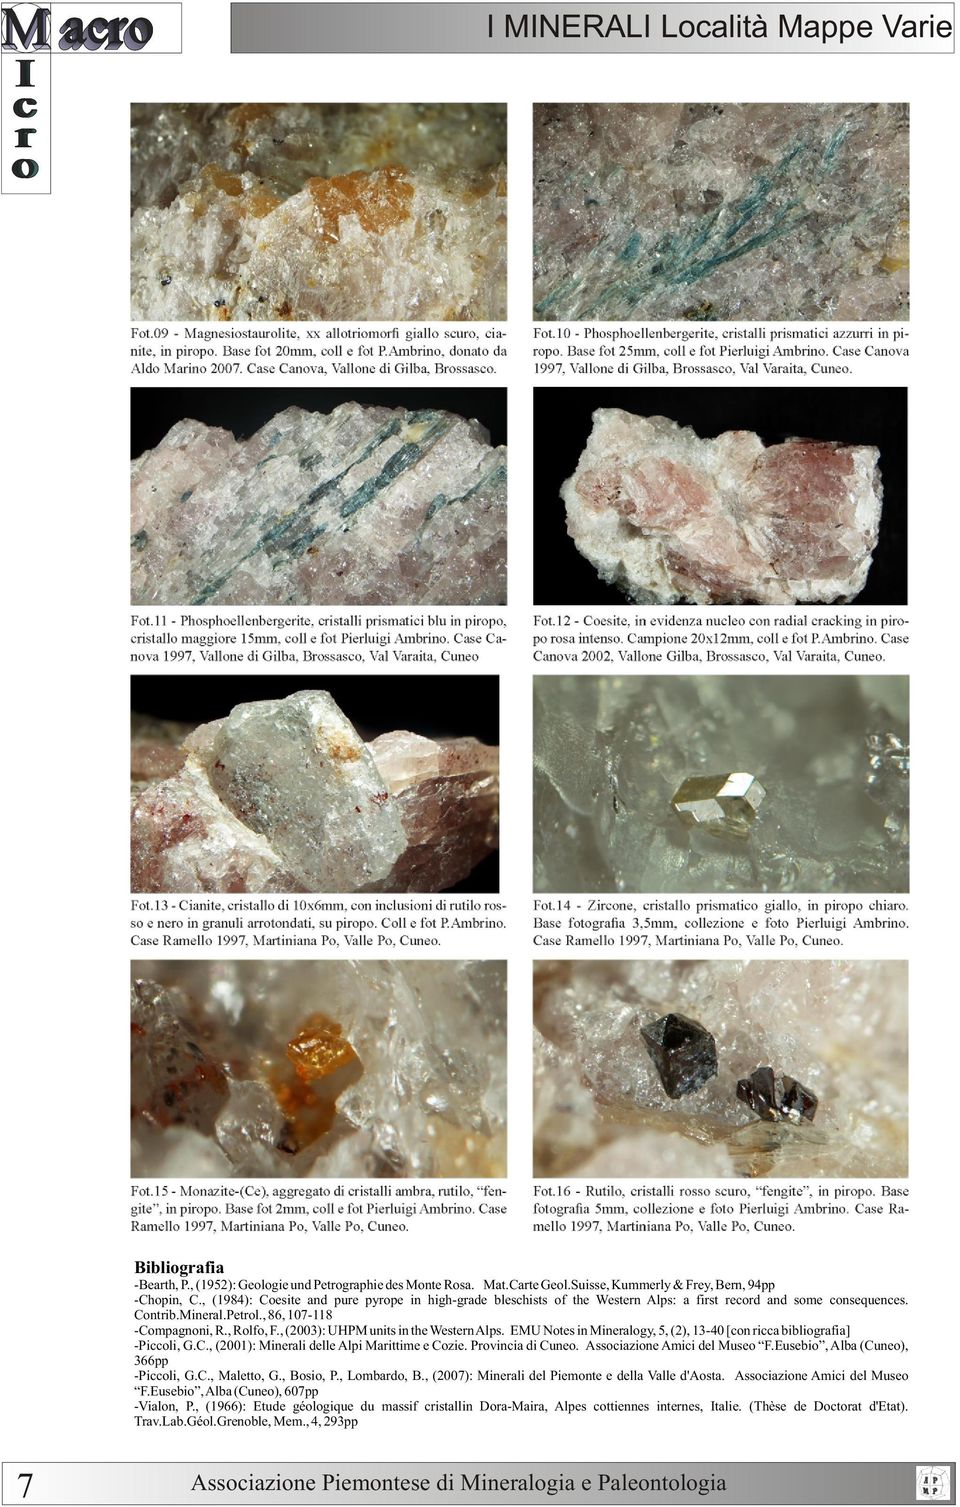 , (2003): UHPM units in the Western Alps. EMU Notes in Mineralogy, 5, (2), 13-40 [con ricca bibliografia] -Piccoli, G.C., (2001): Minerali delle Alpi Marittime e Cozie. Provincia di Cuneo.